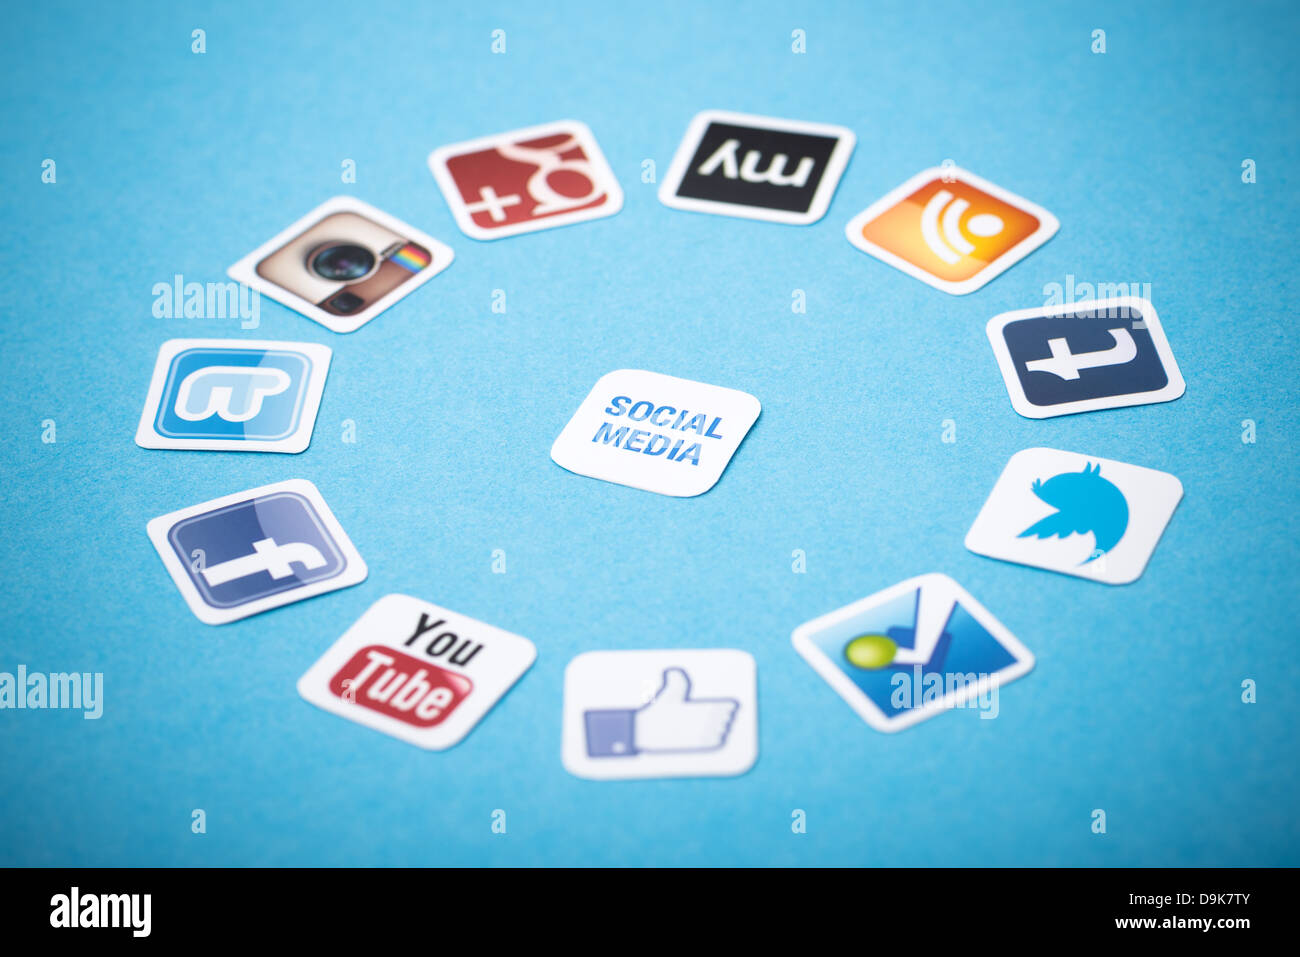 Un logotipo colección de medios sociales bien conocidas marcas impresas en papel y colocado alrededor sobre un fondo azul. Foto de stock